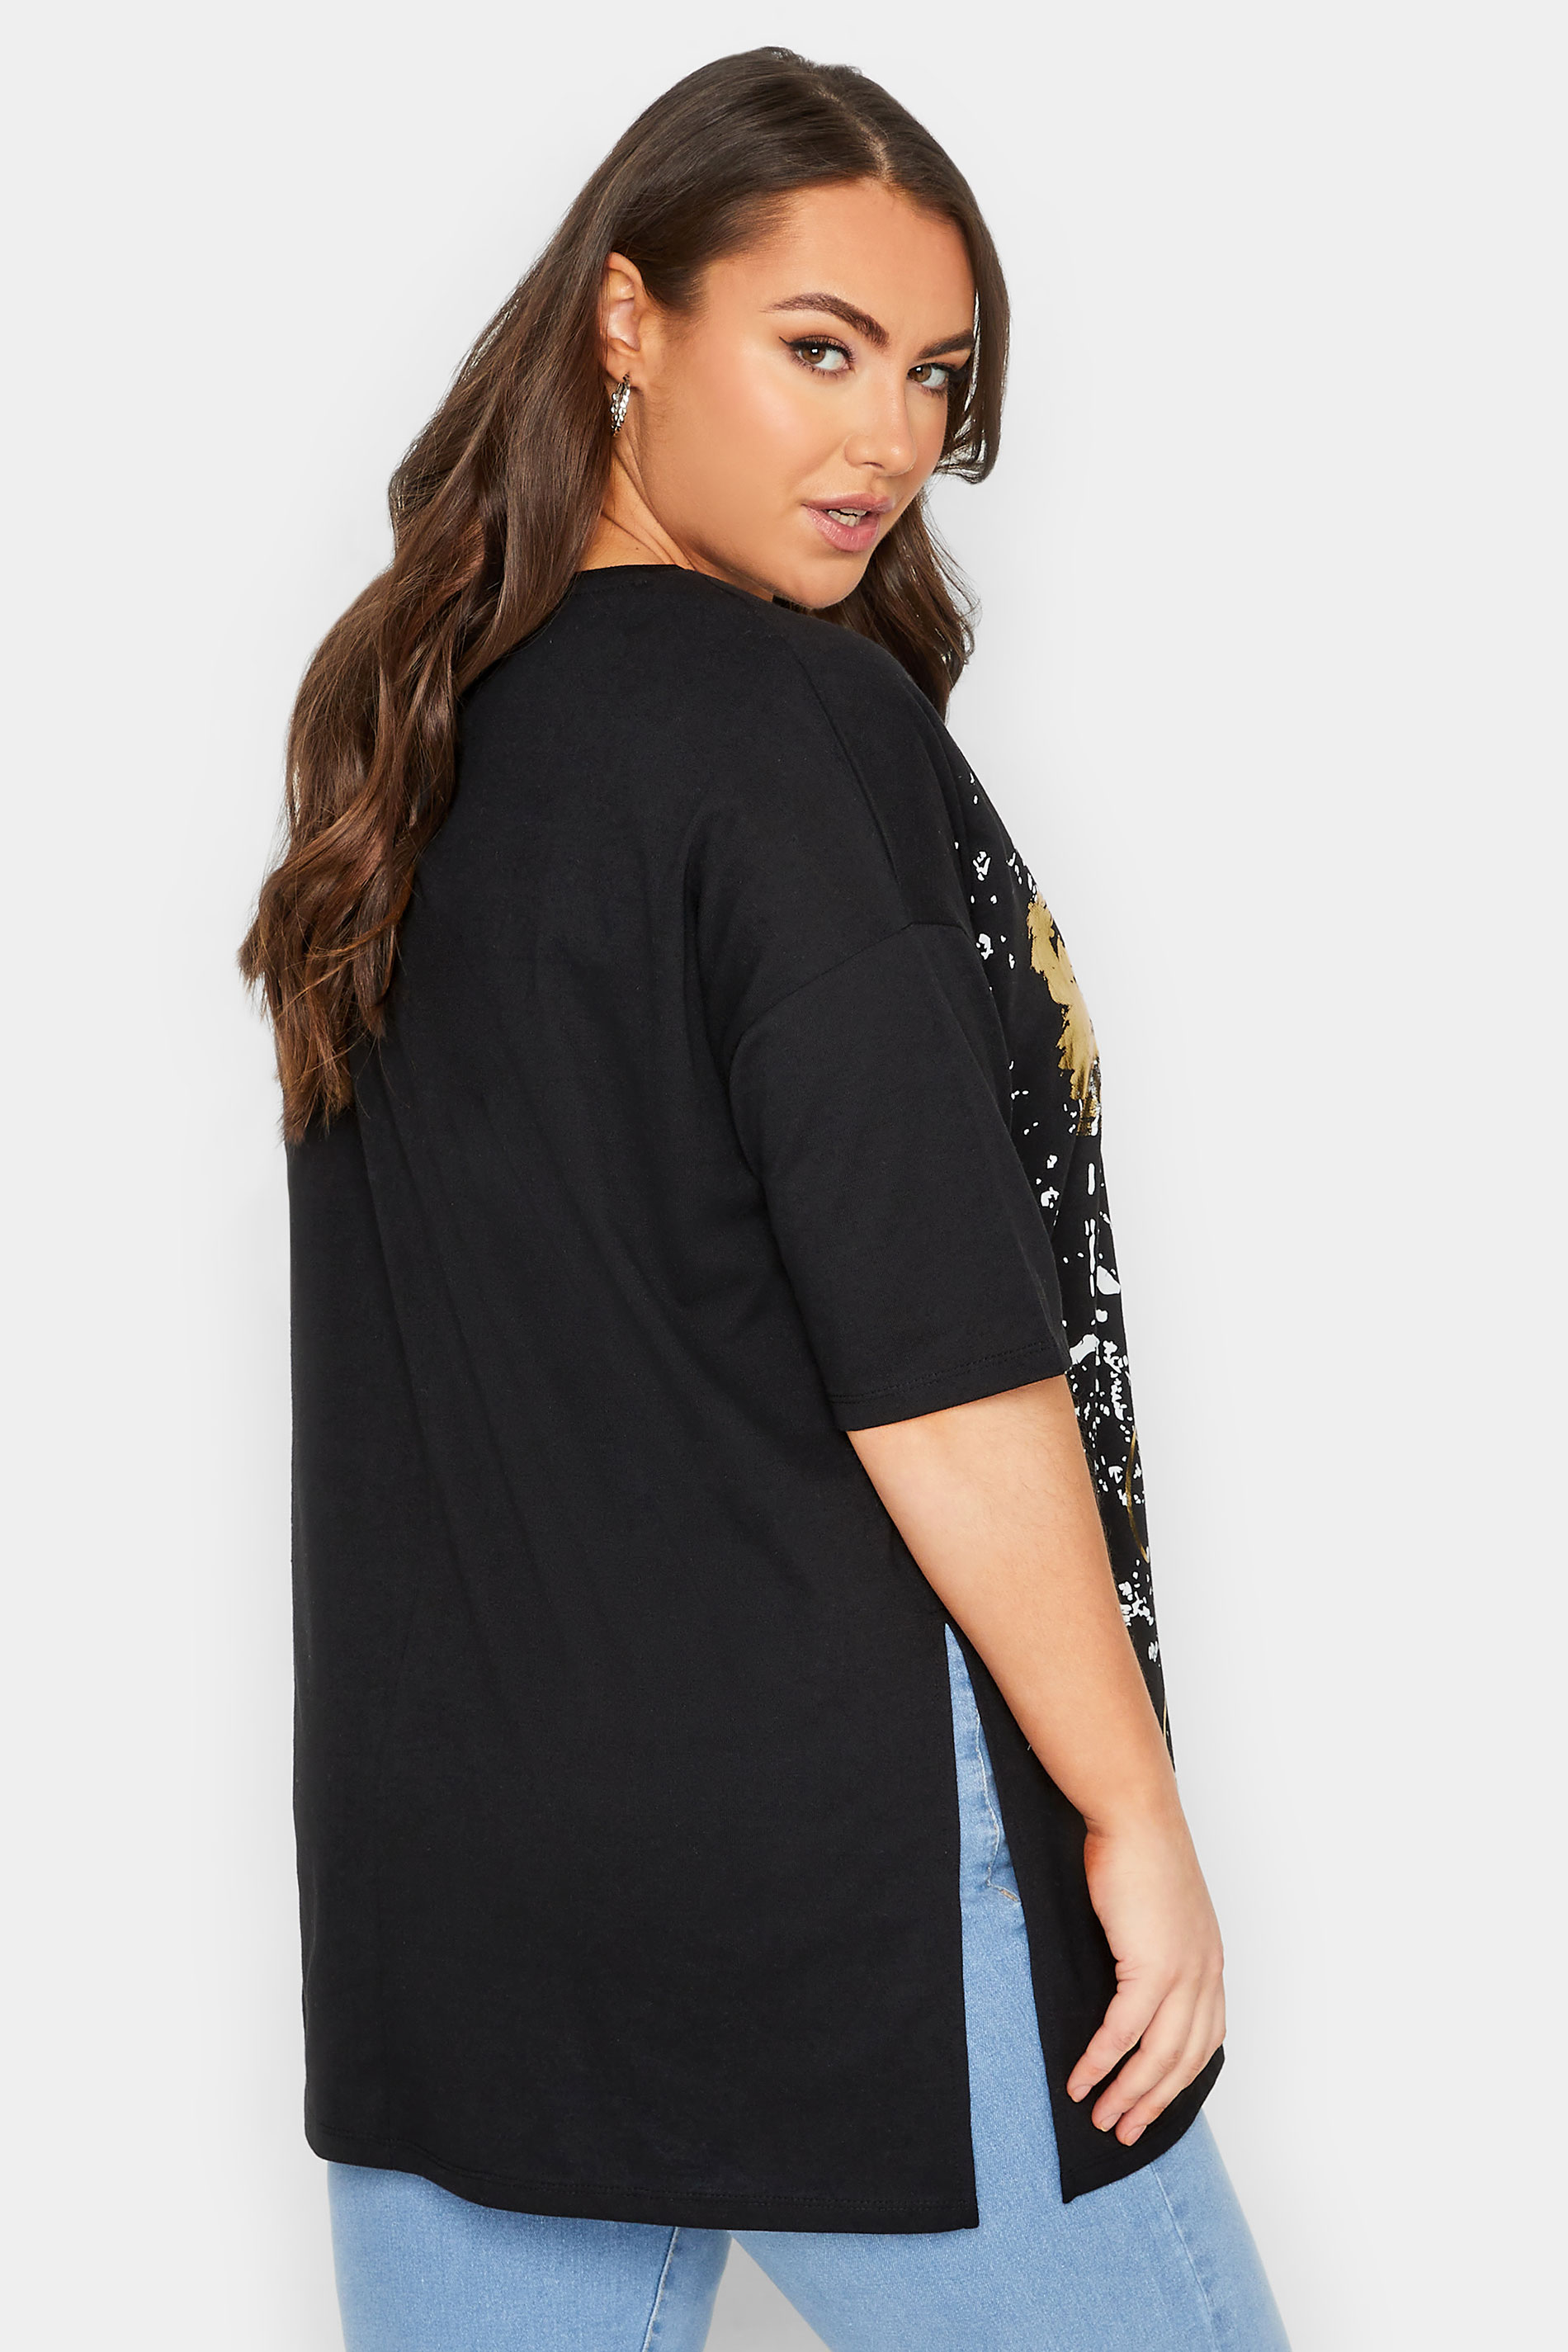 YOURS Plus Size Curve Black Foil Leopard Graphic T-Shirt | Yours Clothing  3